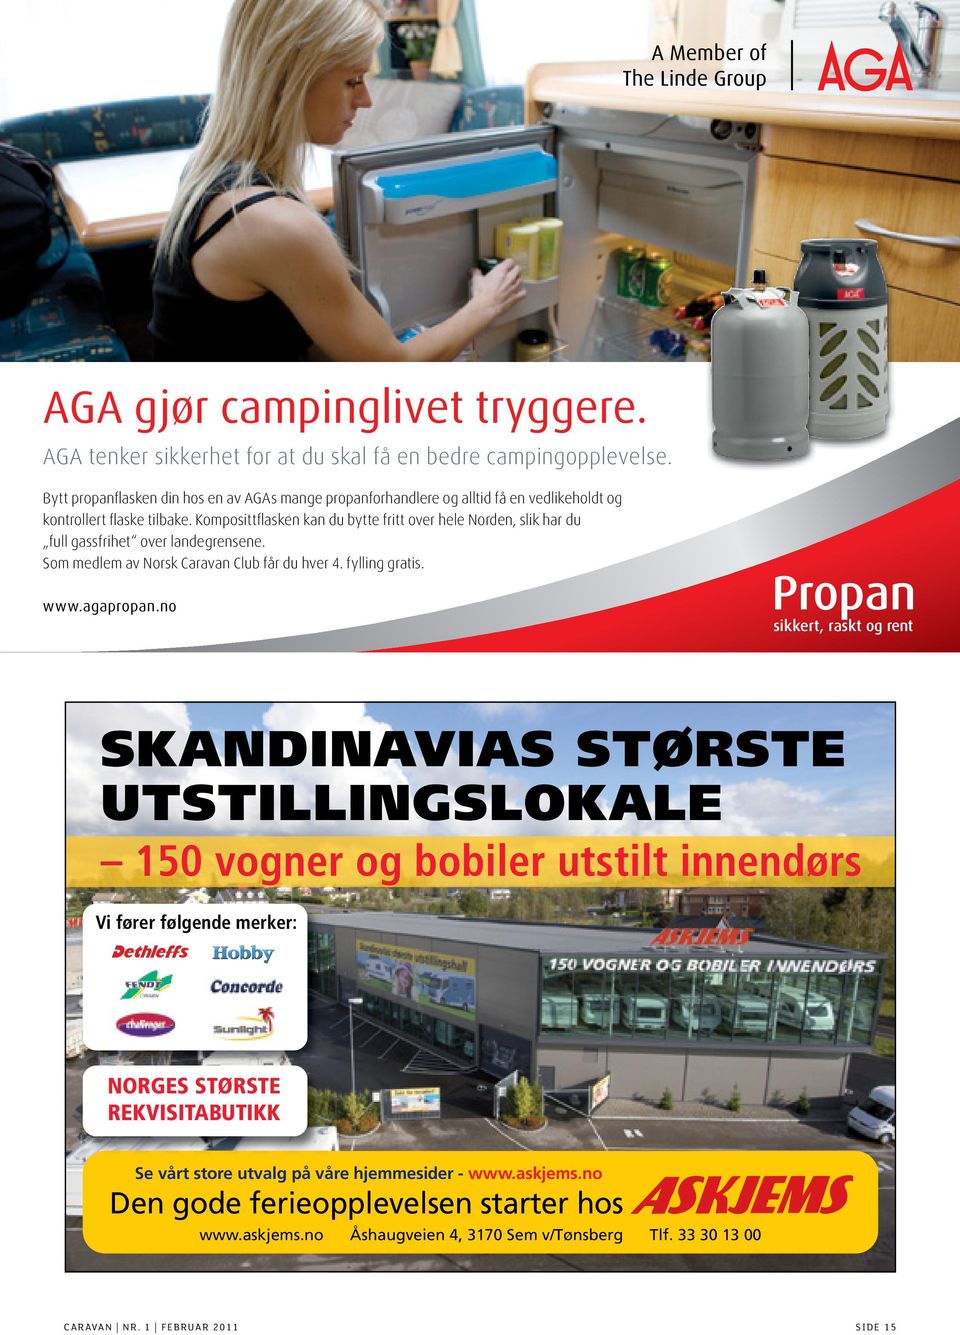 Komposittflasken kan du bytte fritt over hele Norden, slik har du full gassfrihet over landegrensene. Som medlem av Norsk Caravan Club får du hver 4. fylling gratis. www.agapropan.